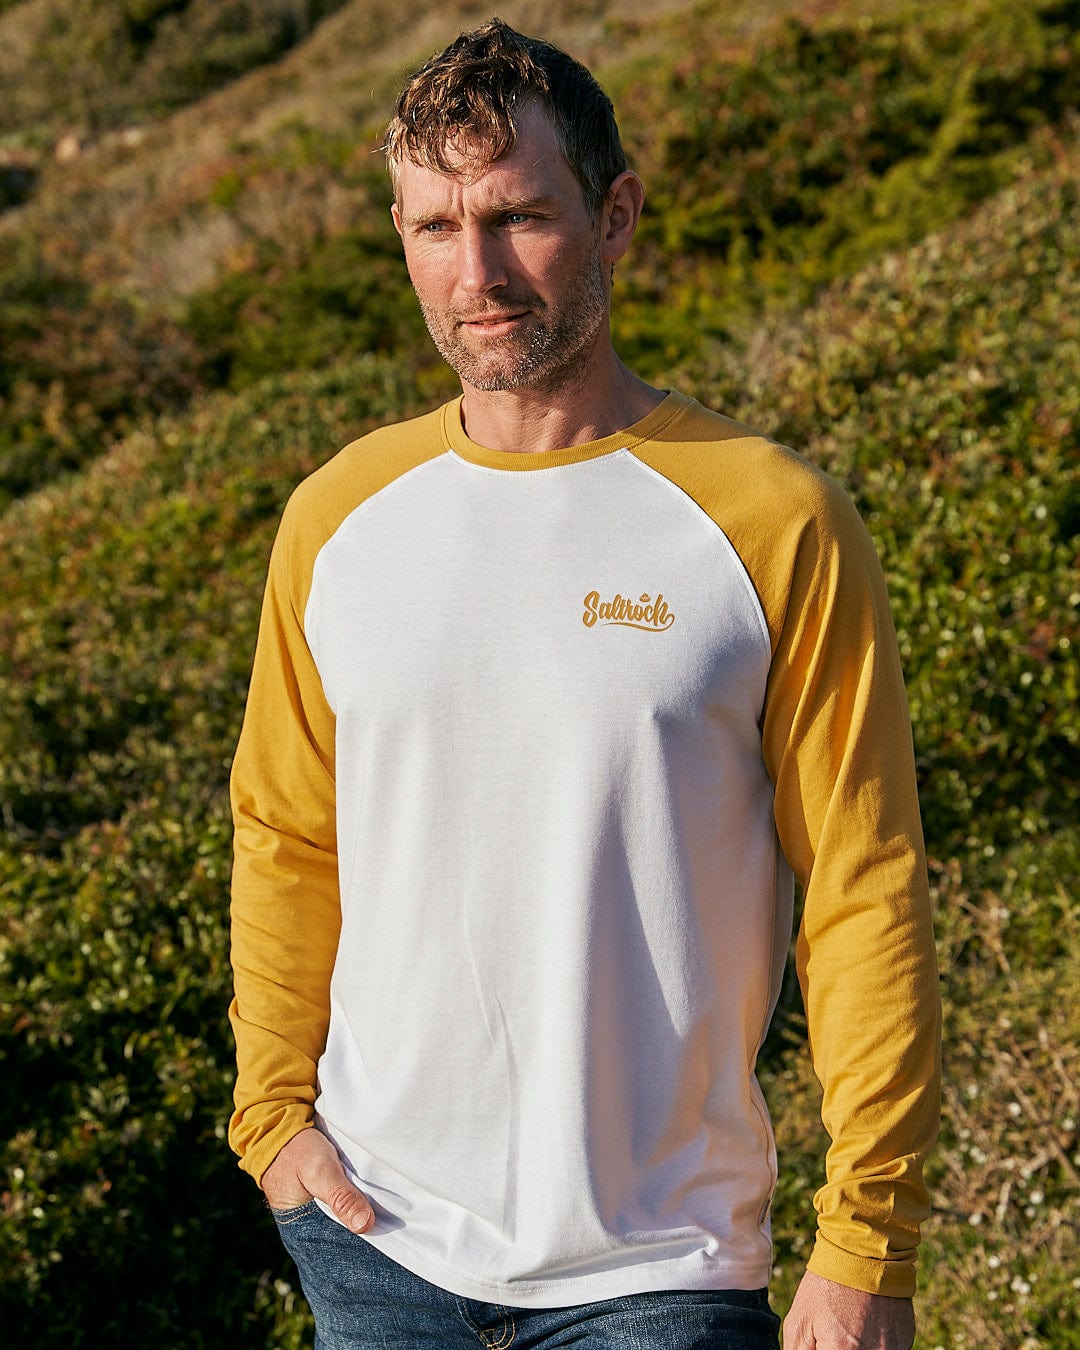 A man wearing a Saltrock Speed - Men's Long Sleeve Raglan T-Shirt in Ochre/White.